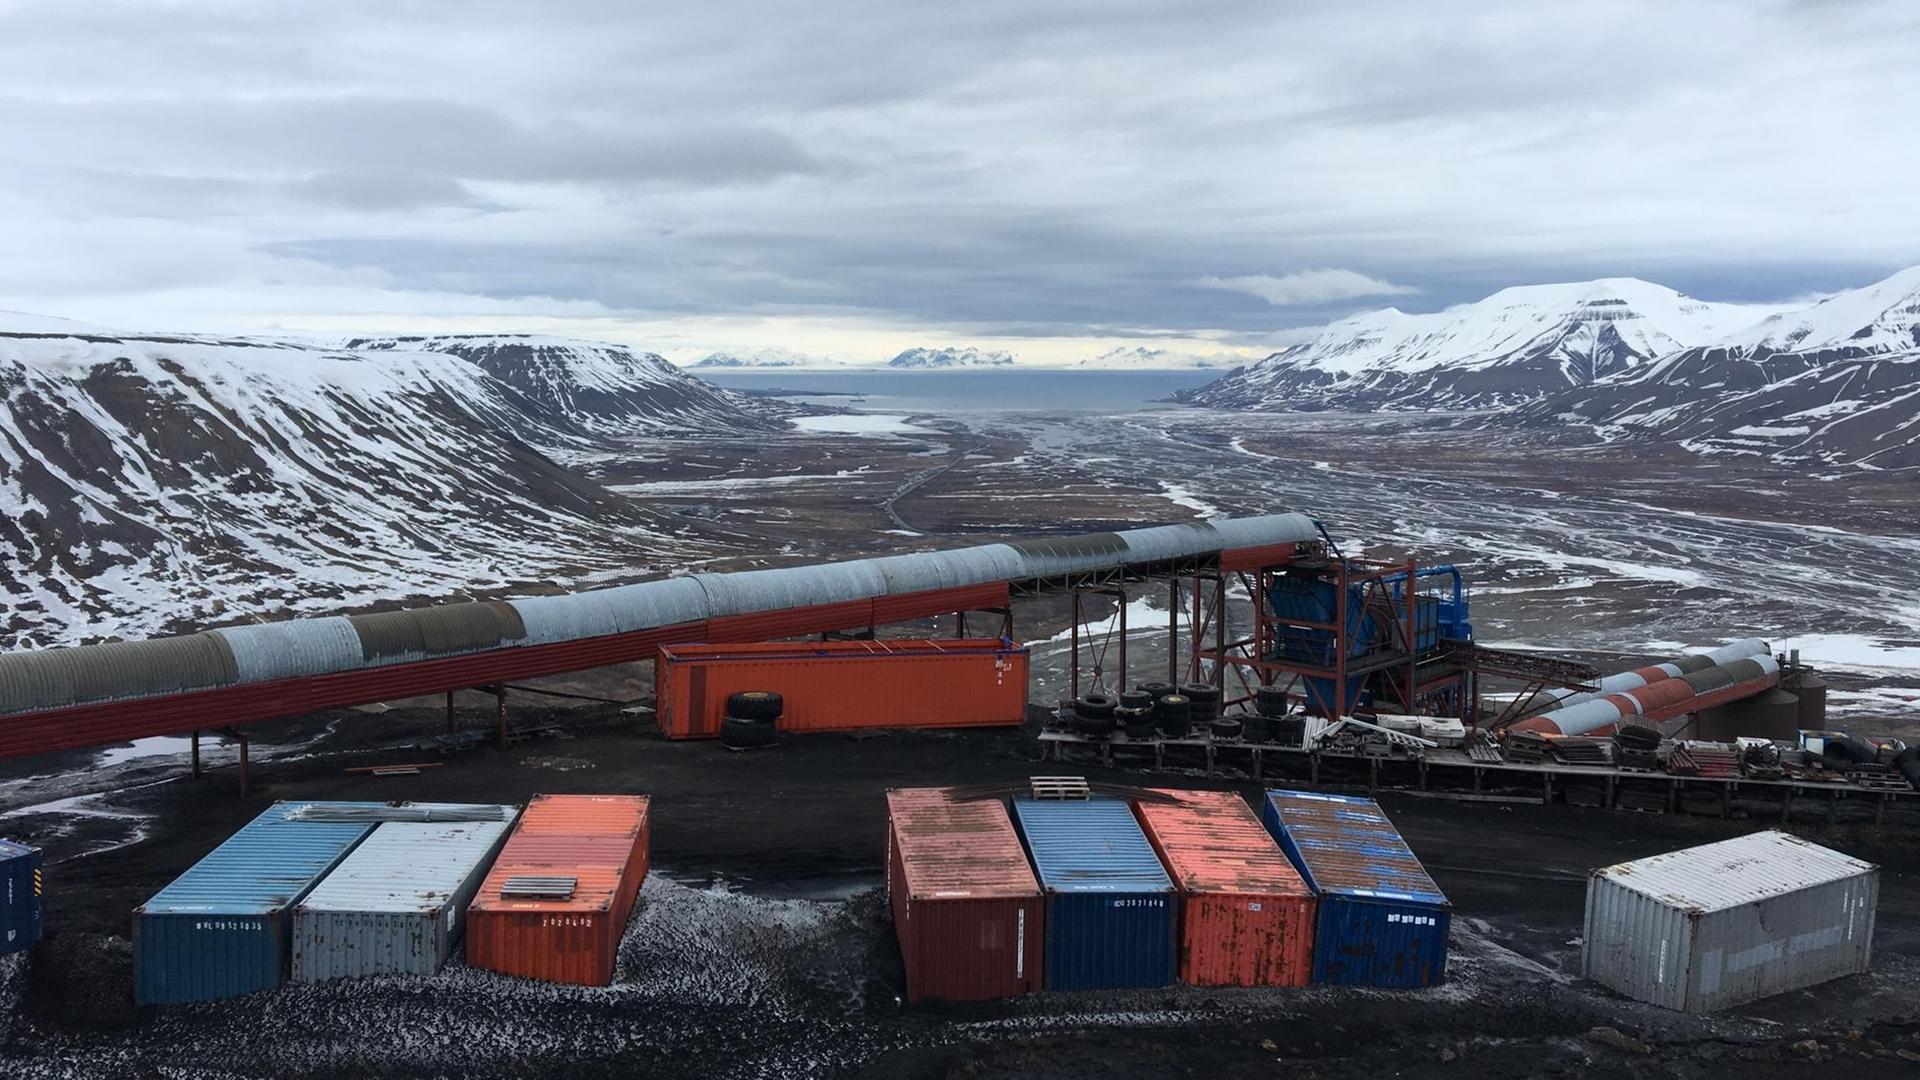 Ausblick in eine Kohlegrube mit bunten Containern, im Hintergrund erstreckt sich eine winterliche Berglandschaft